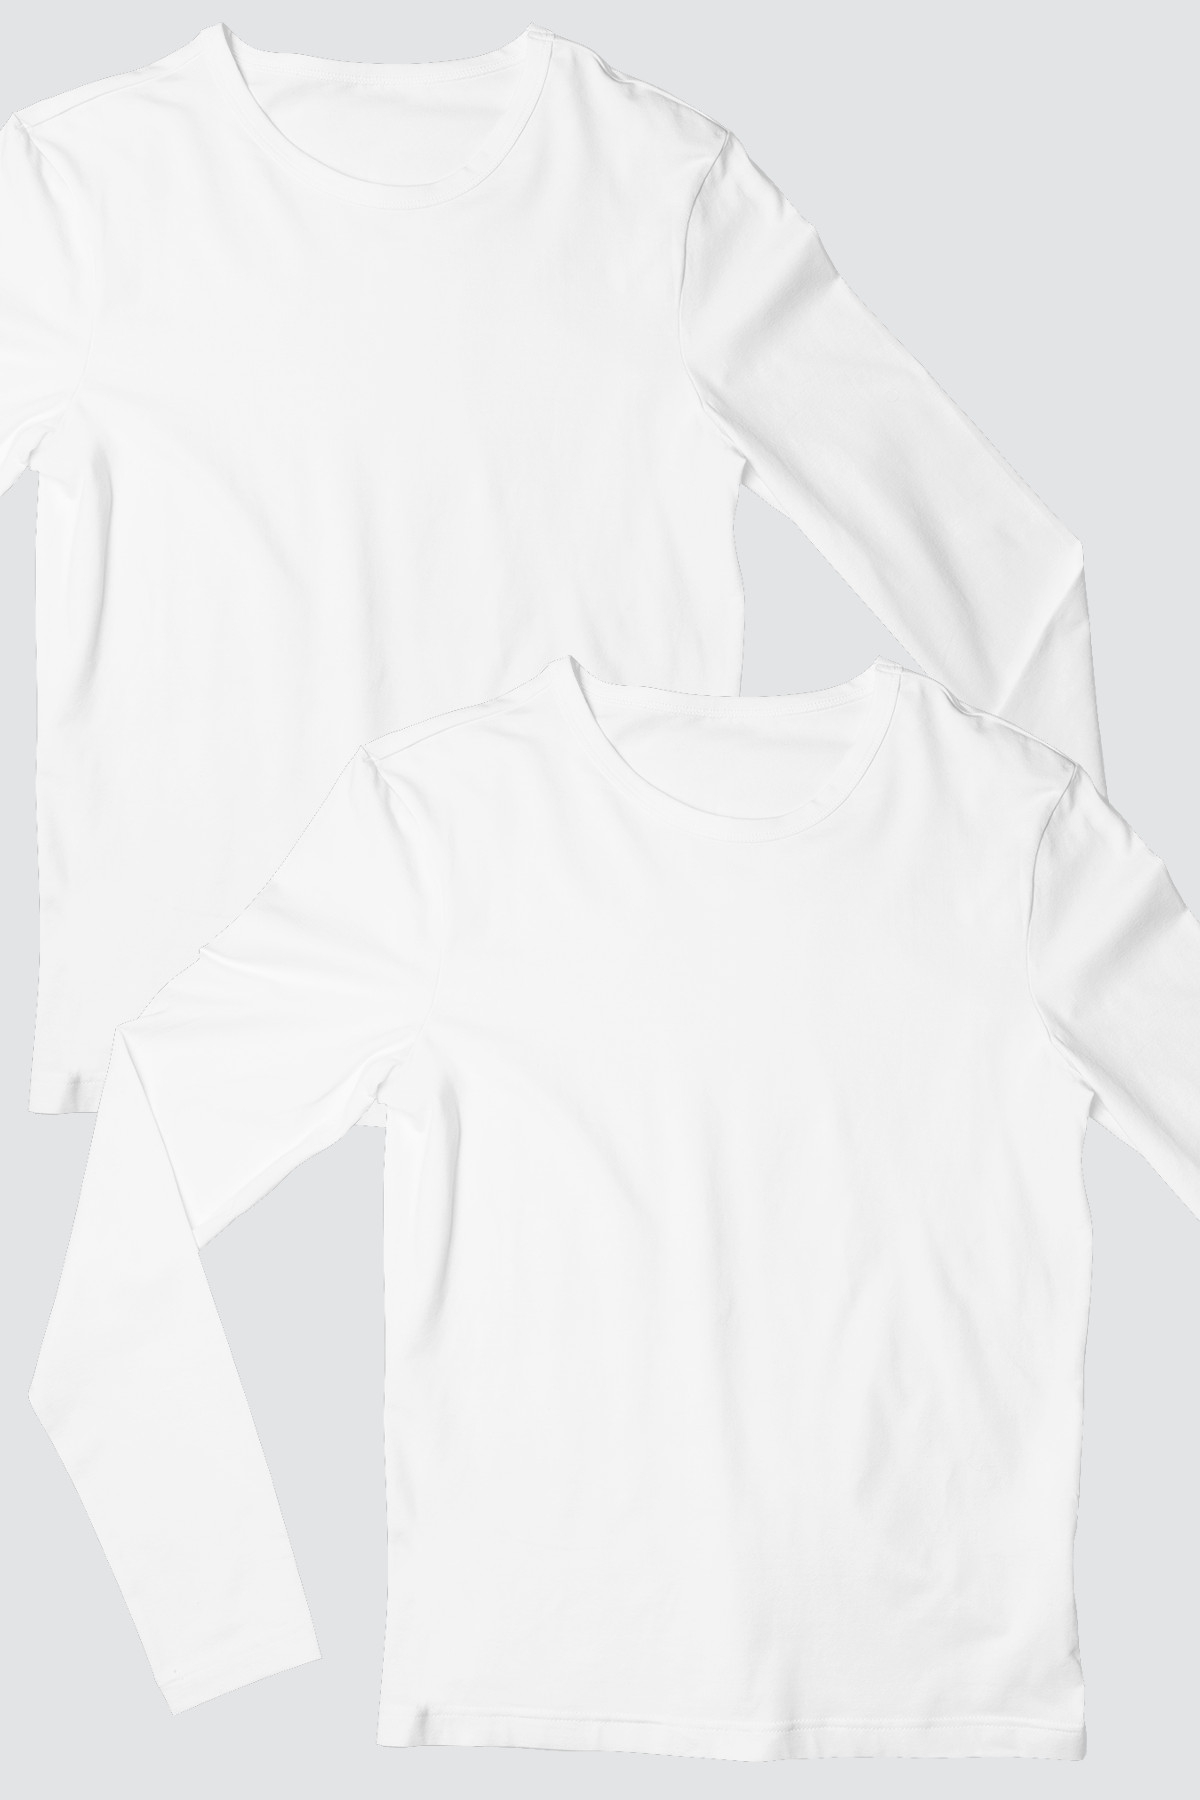 Düz, Baskısız Beyaz Uzun Kollu Erkek T-shirt 2'li Eko Paket